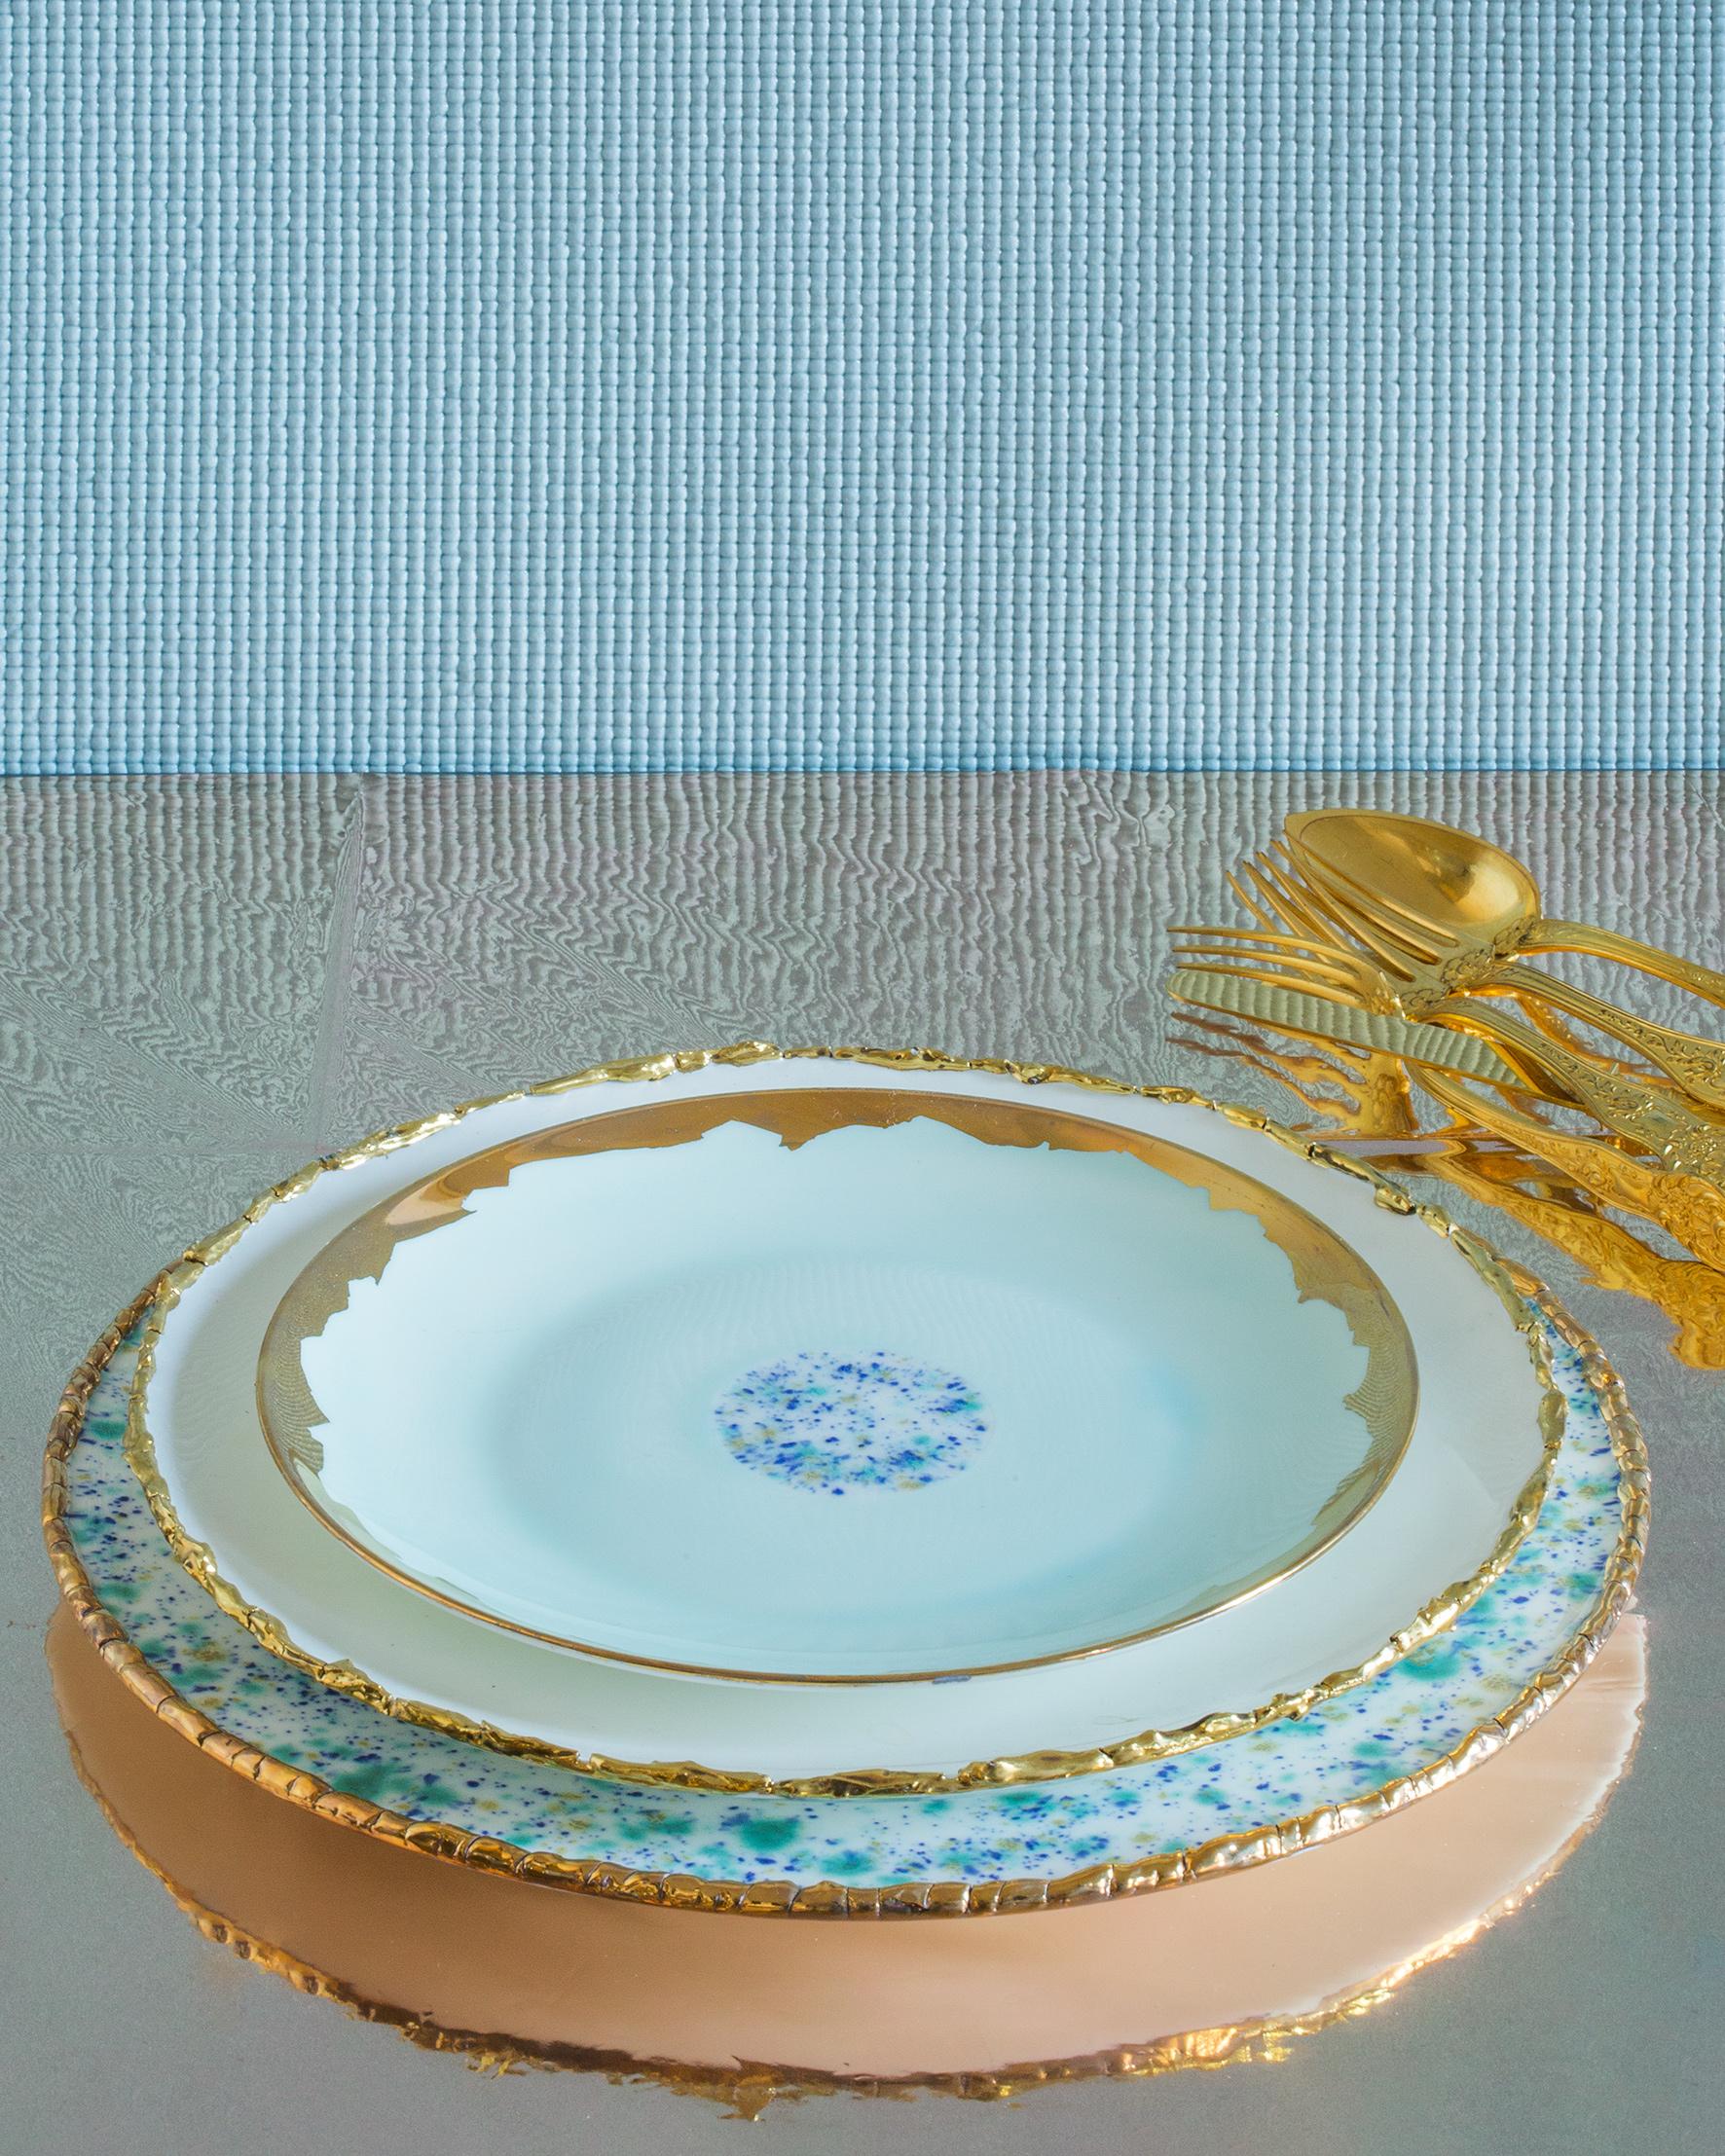 Fabriquée à la main en Italie à partir de la porcelaine la plus fine, cette assiette de présentation Blue Marble présente un bord original craquelé doré qui met en valeur le décor bleu, jaune et vert et le centre émeraude.

Assiette de